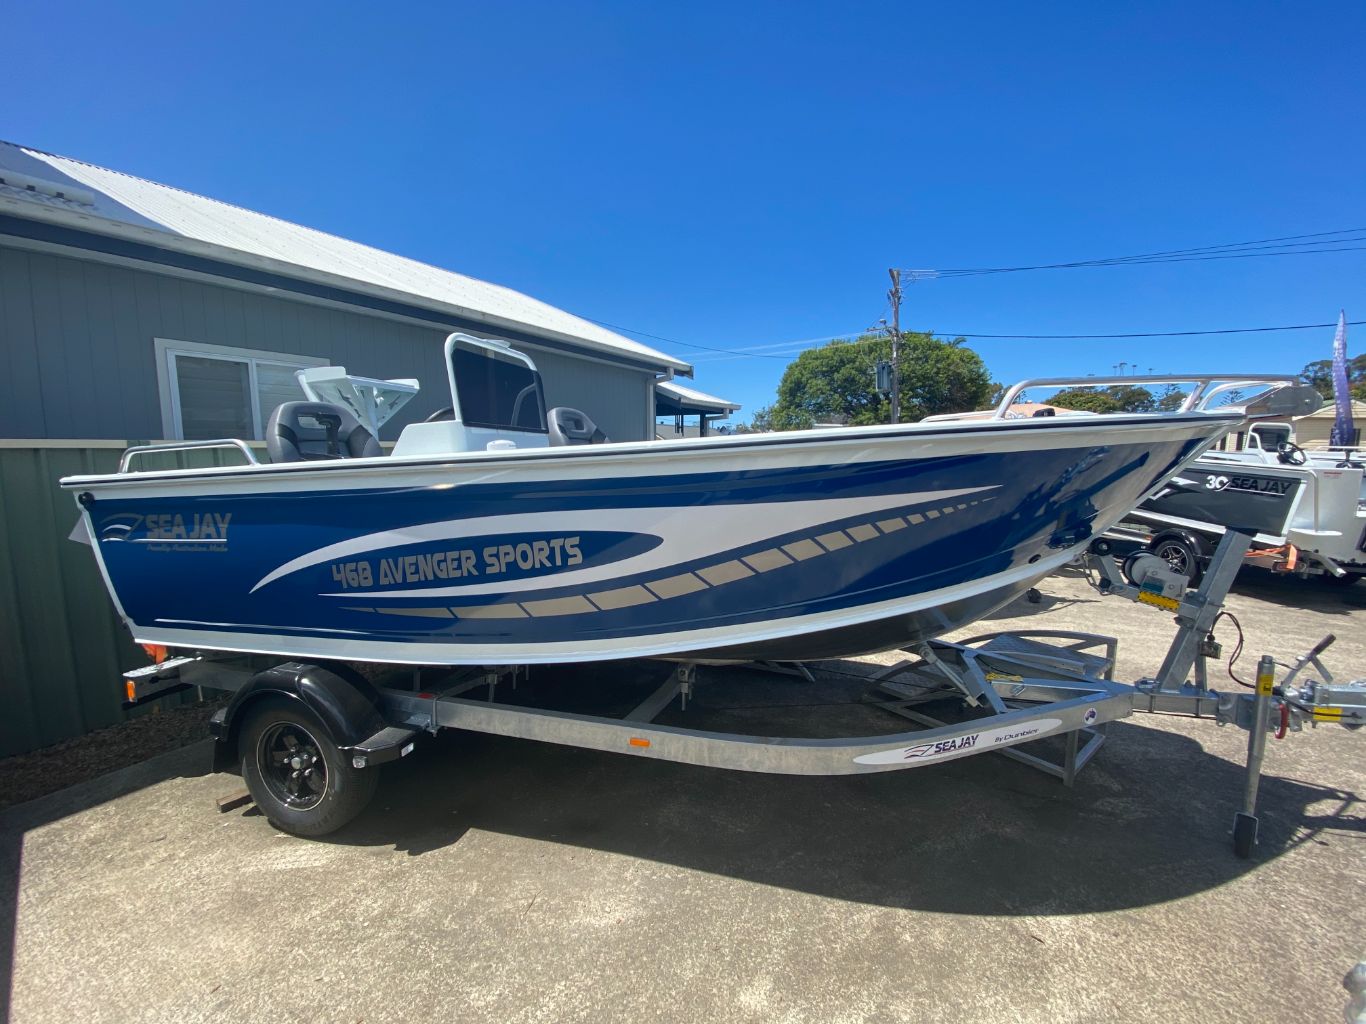 468 Avenger Sports — Boat Sales in Port Macquarie, NSW